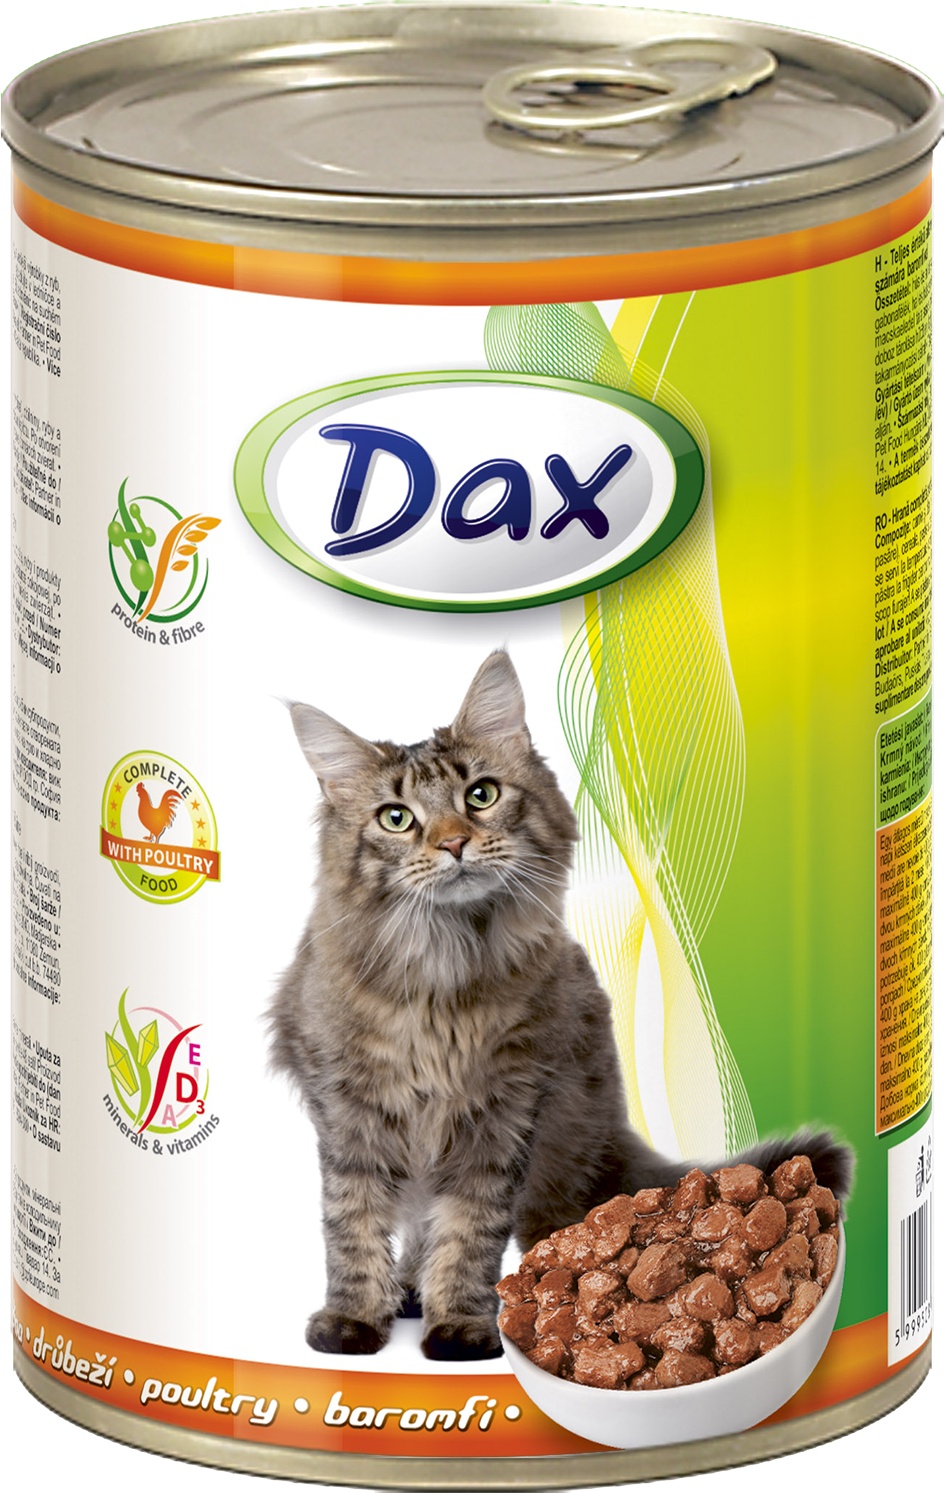 Slika za Hrana za mačke Dax živina 400g